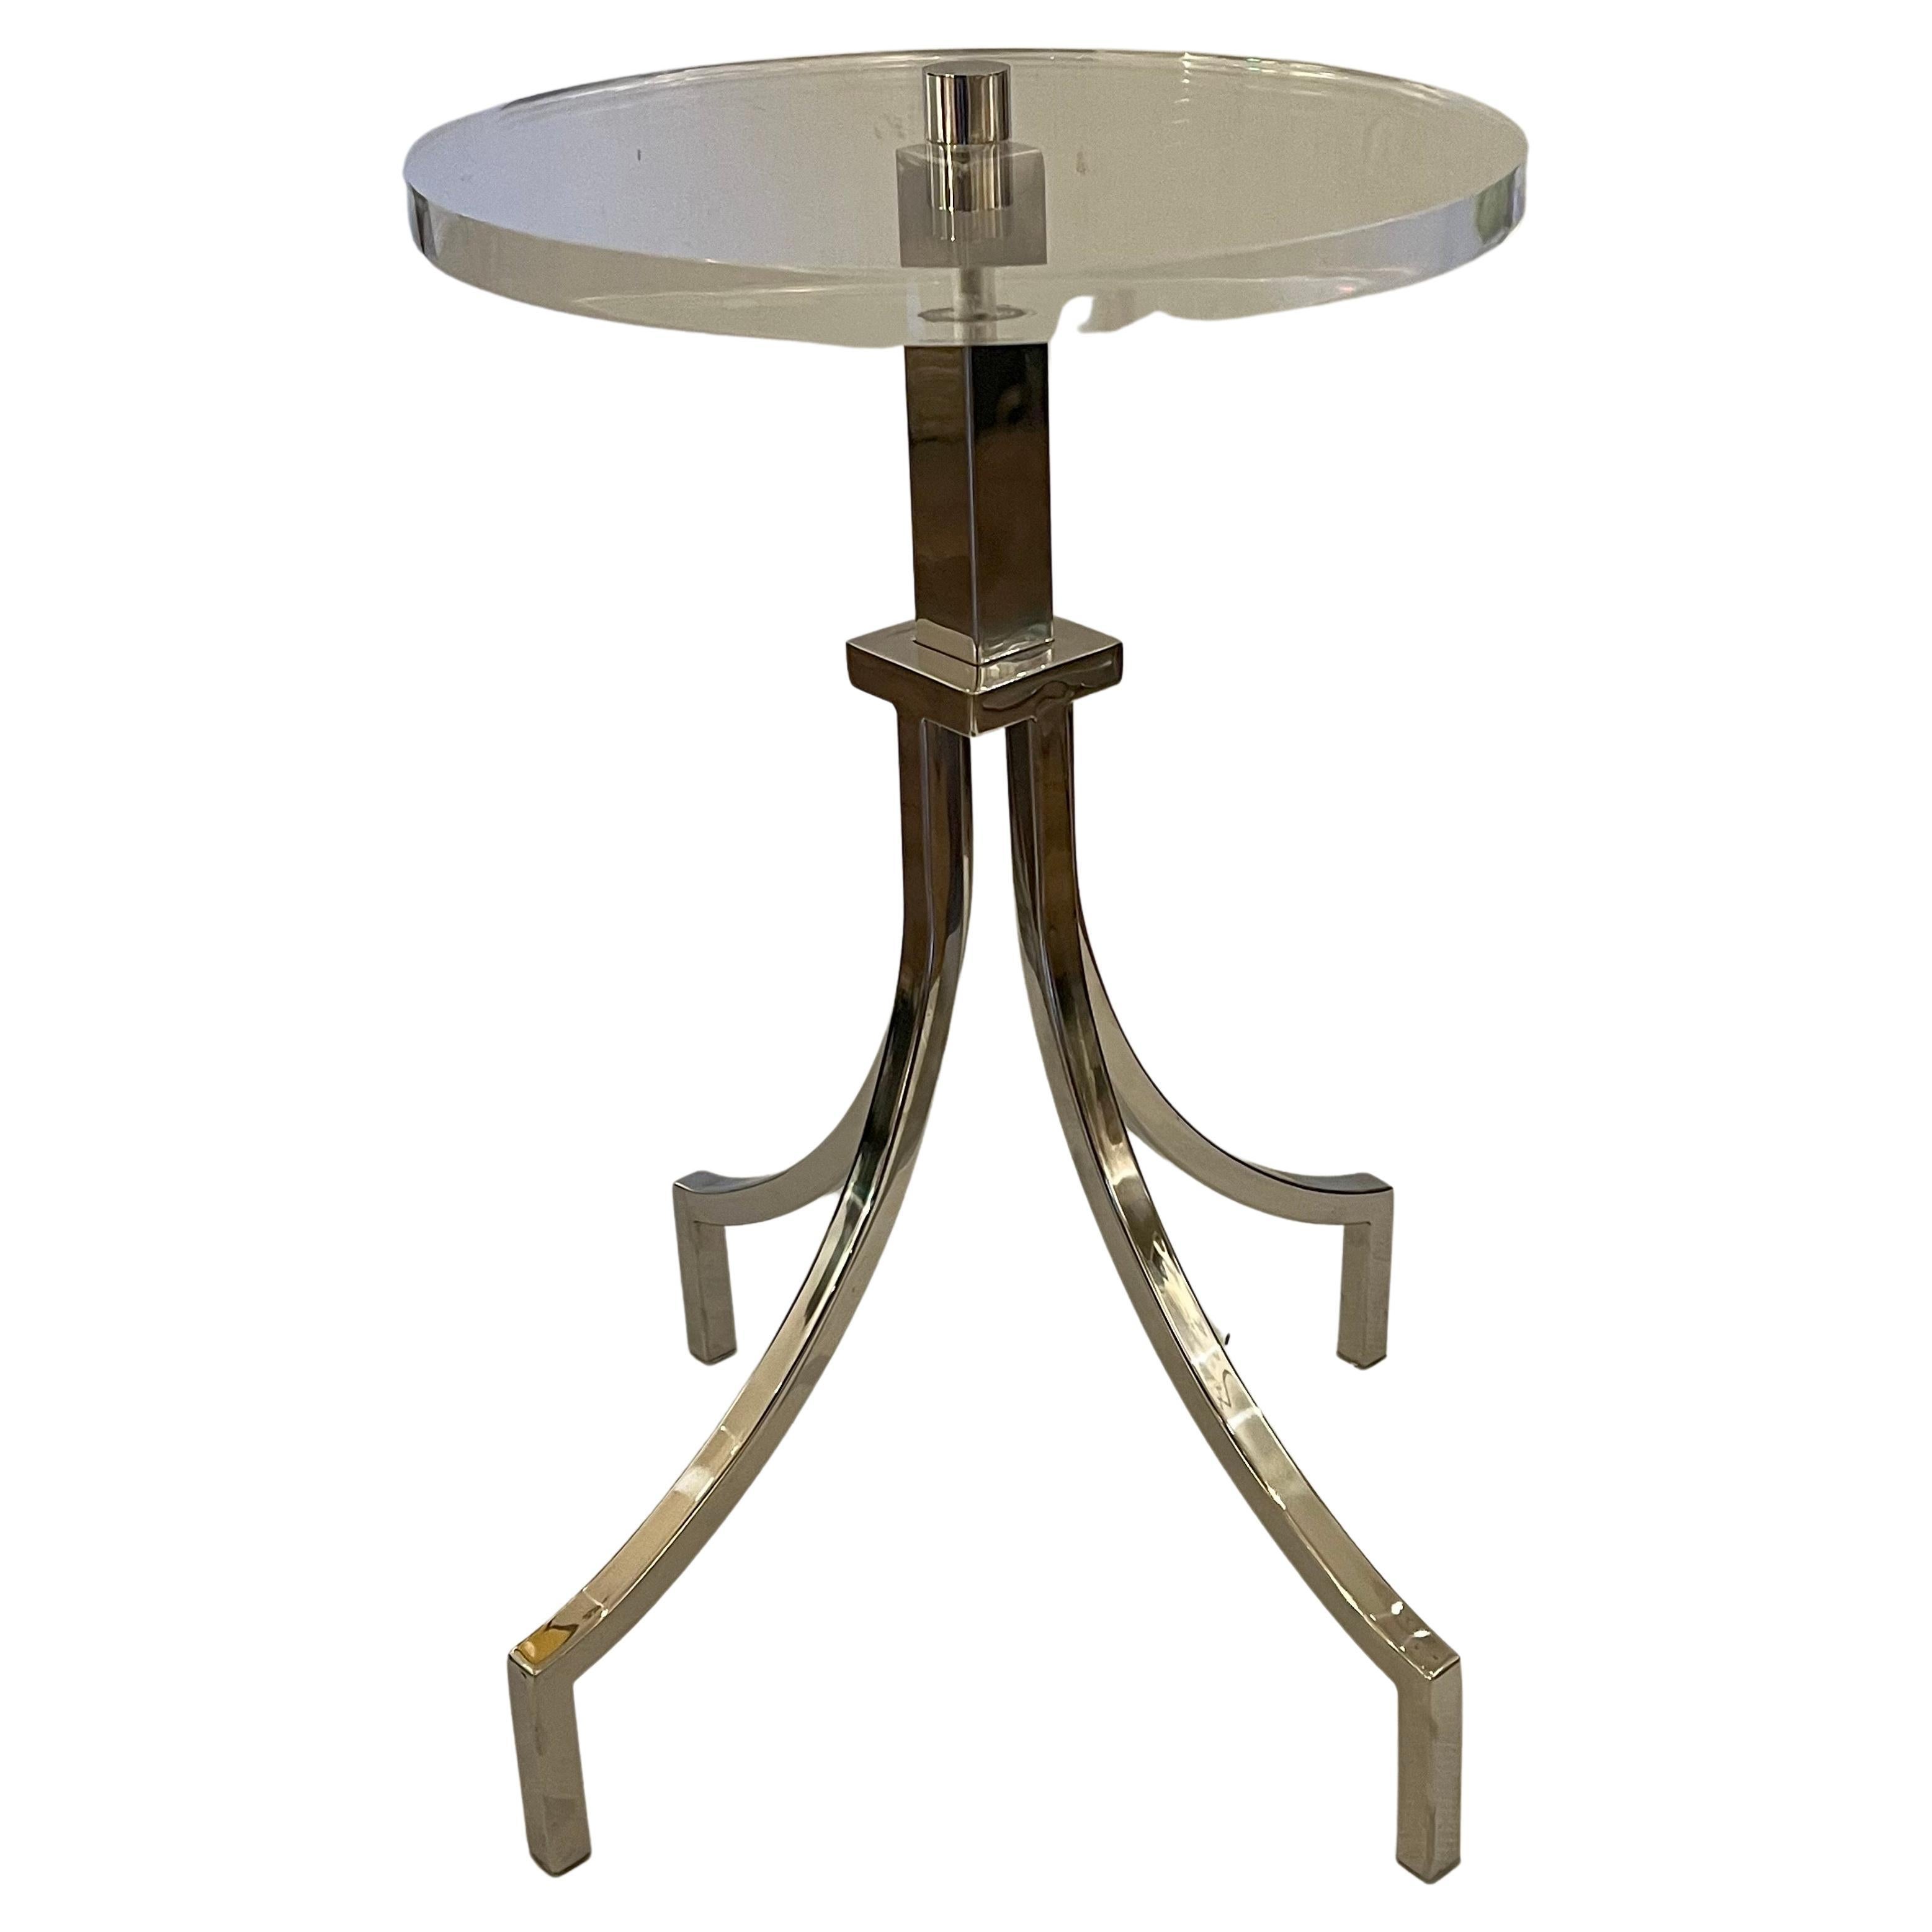 Magnifique table de cocktail élégante de type Elegon, en acier nickelé et plateau rond en lucite d'une épaisseur de 1